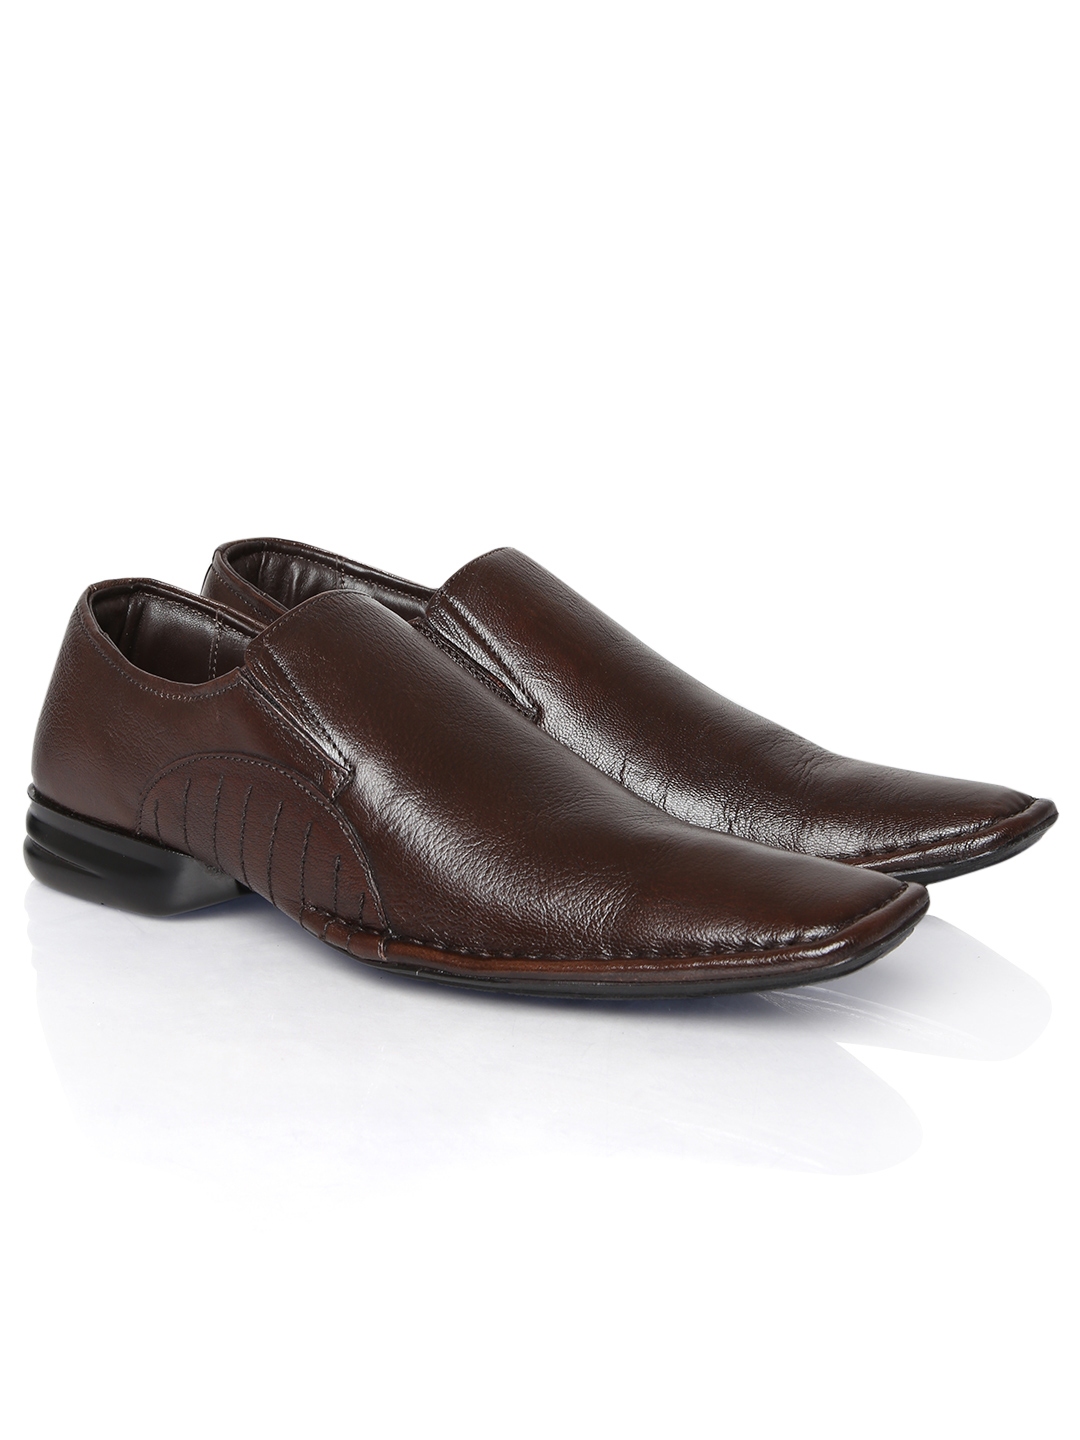 Buy Franco Leone Men Brown Leather Formal Shoes - Formal Shoes for Men ...